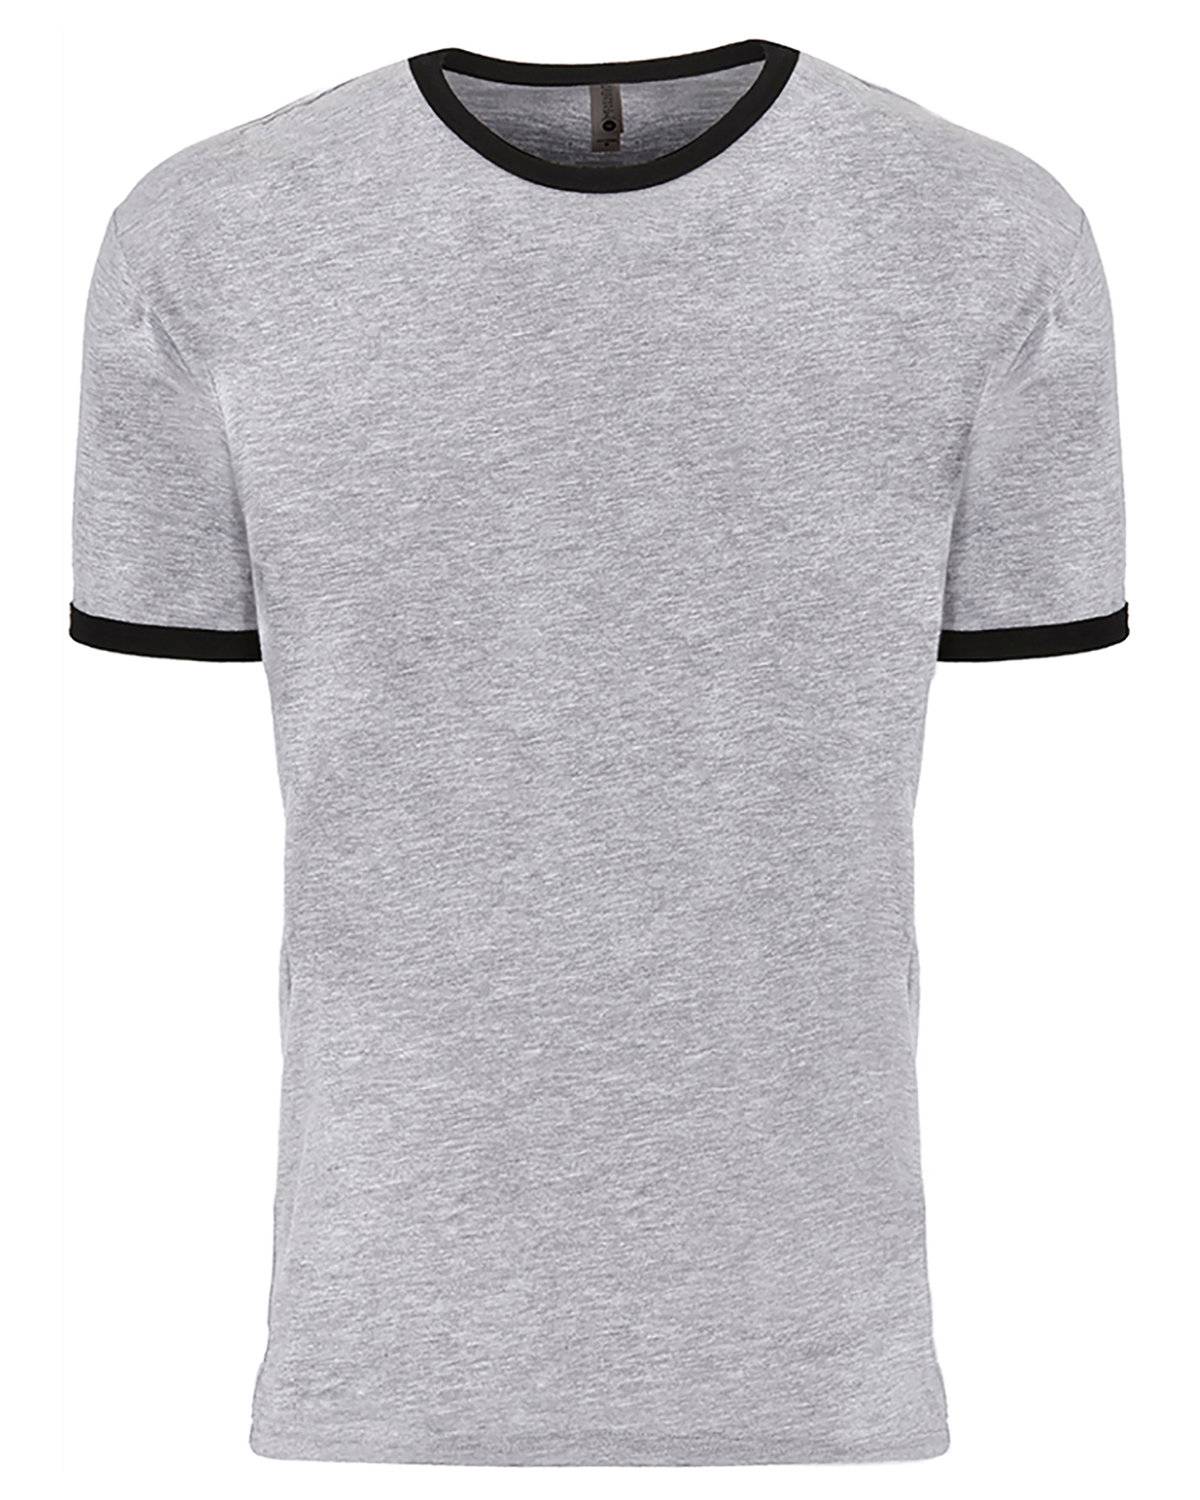 Next Level Unisex Ringer T-Shirt | 3604